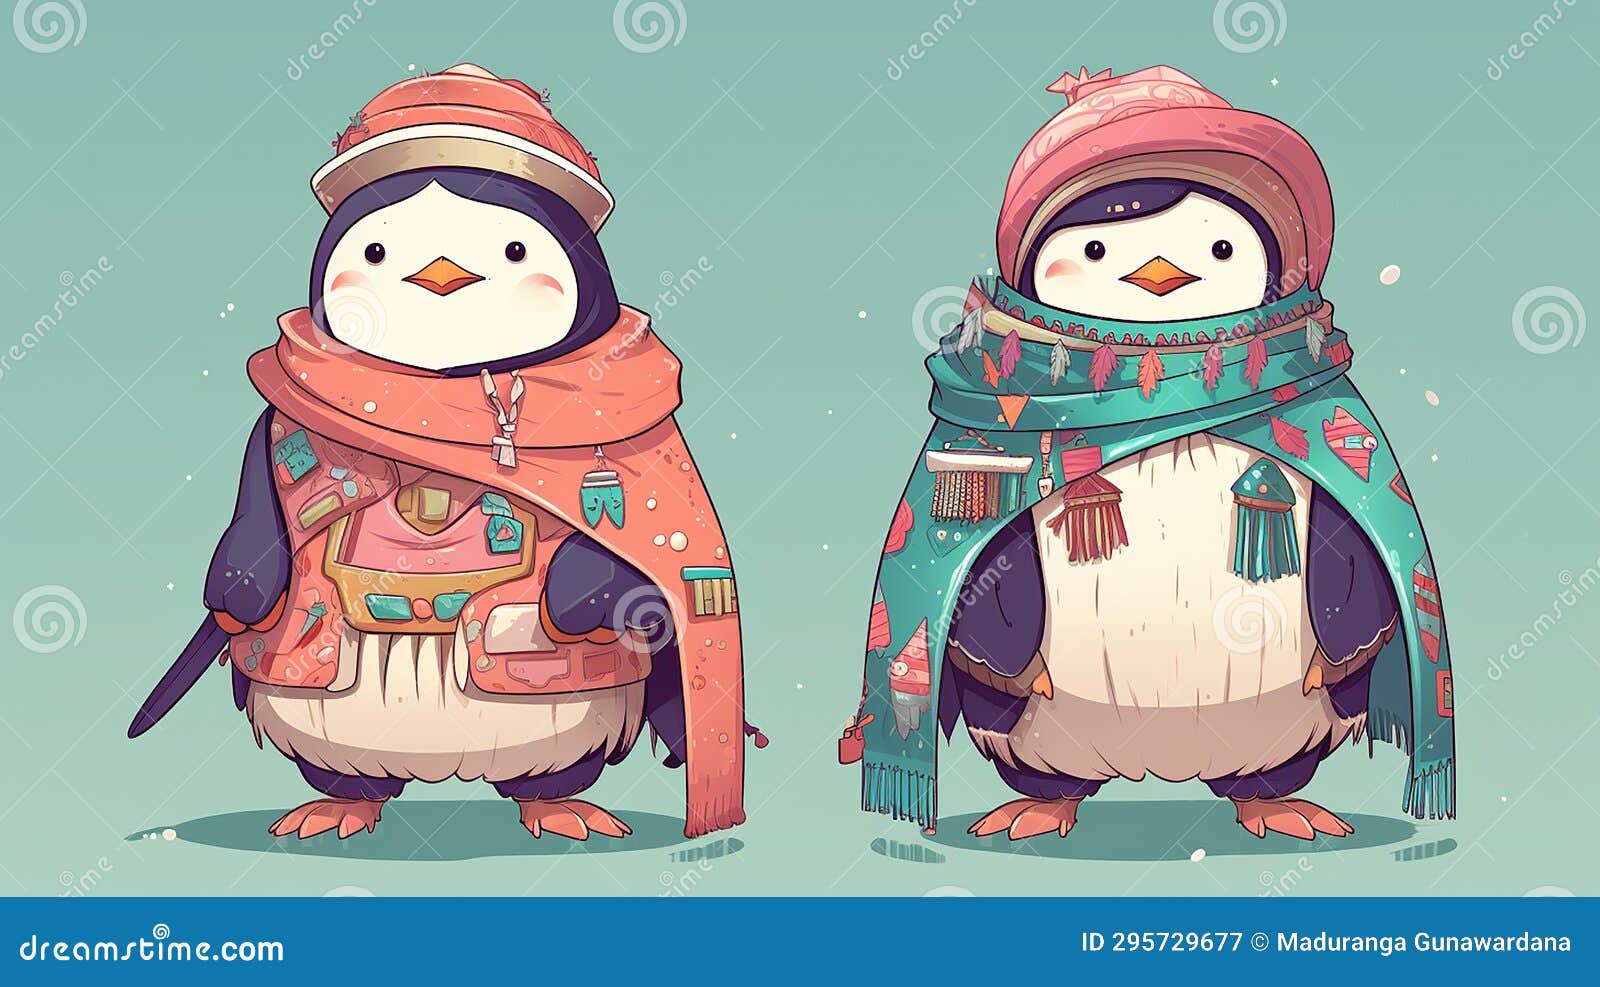 Charming Anime Style Baby Penguin Illustration on White Background Stock  Photo - Image of heavy, penguin: 302882524